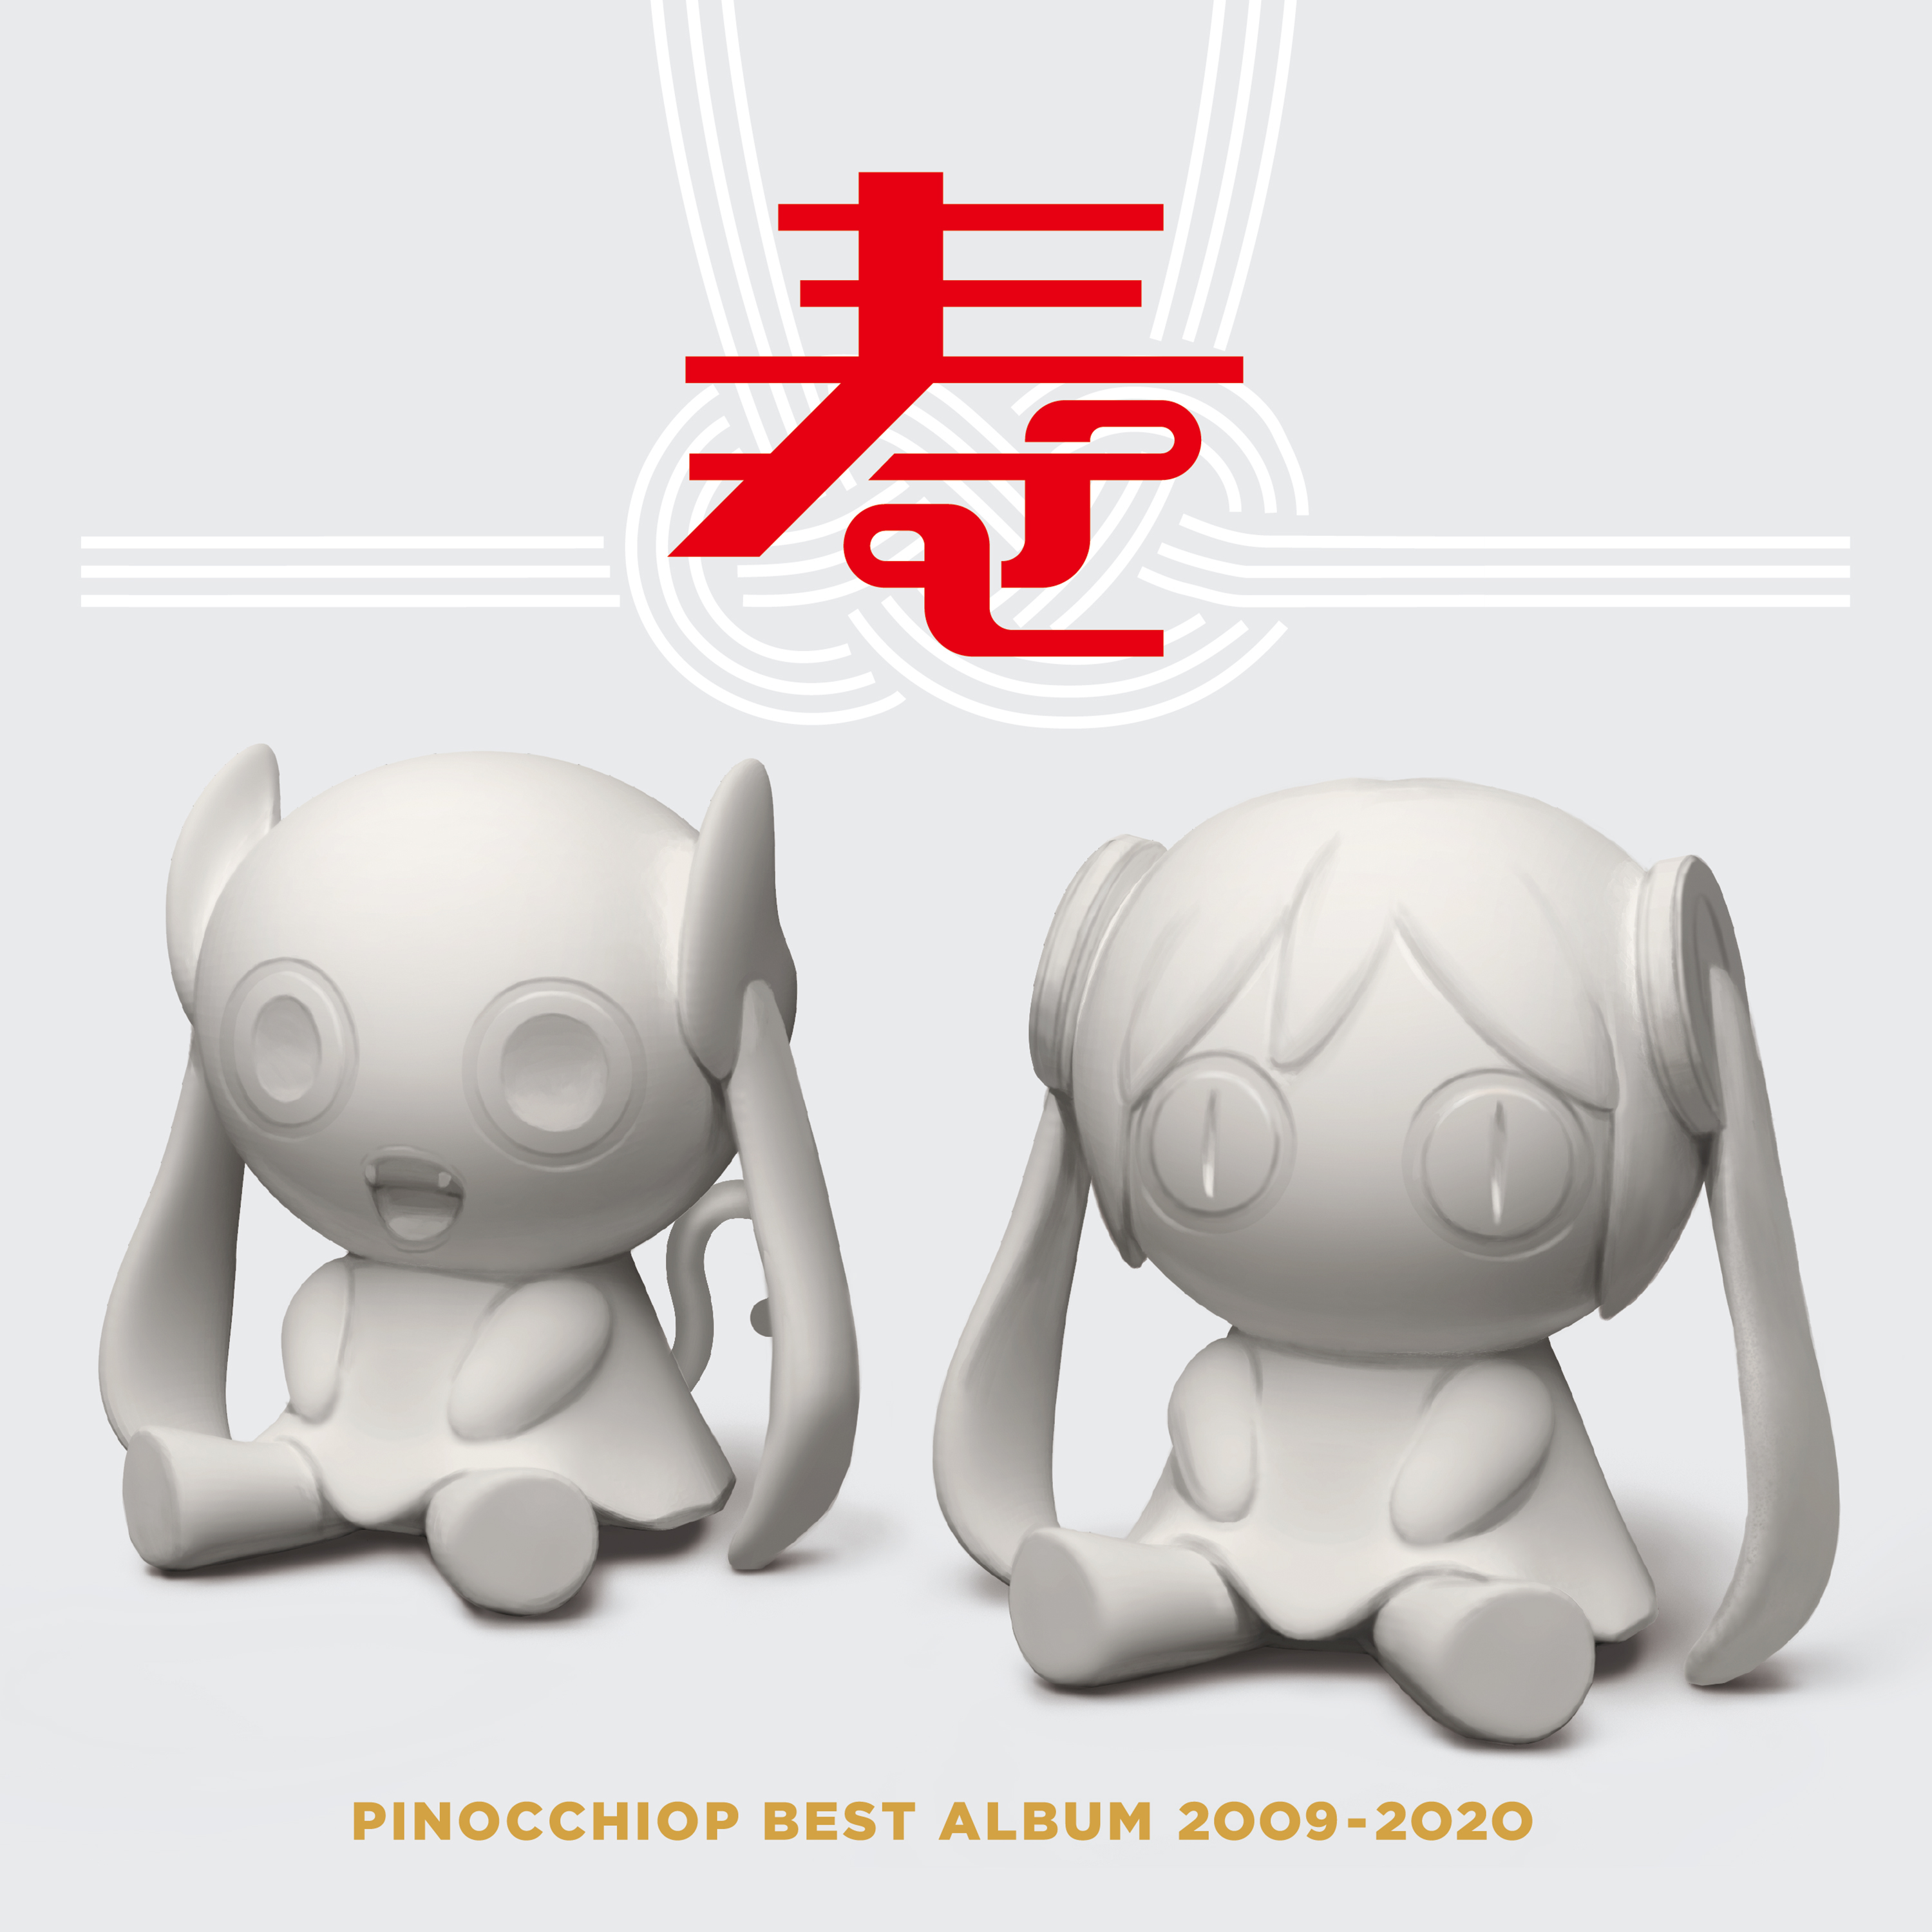 すろぉもぉしょん (sasakure.UK remix)歌词 歌手ピノキオピー / sasakure.UK / 初音ミク-专辑PINOCCHIOP BEST ALBUM 2009-2020 寿-单曲《すろぉもぉしょん (sasakure.UK remix)》LRC歌词下载